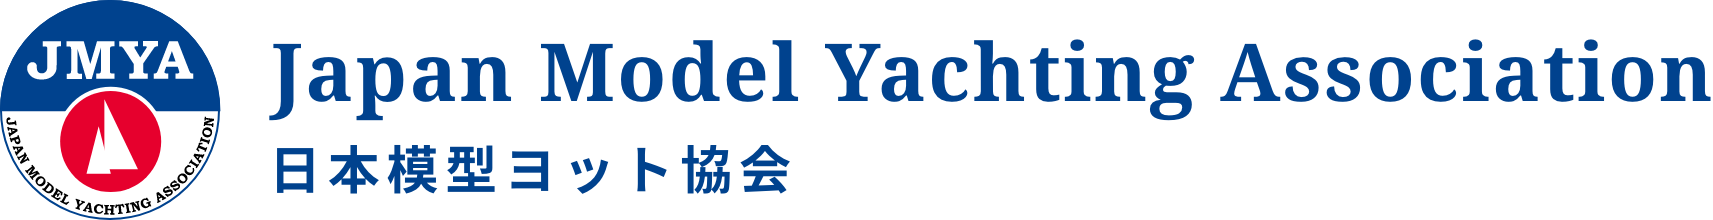 日本模型ヨット協会-Japan Model Yachting Association